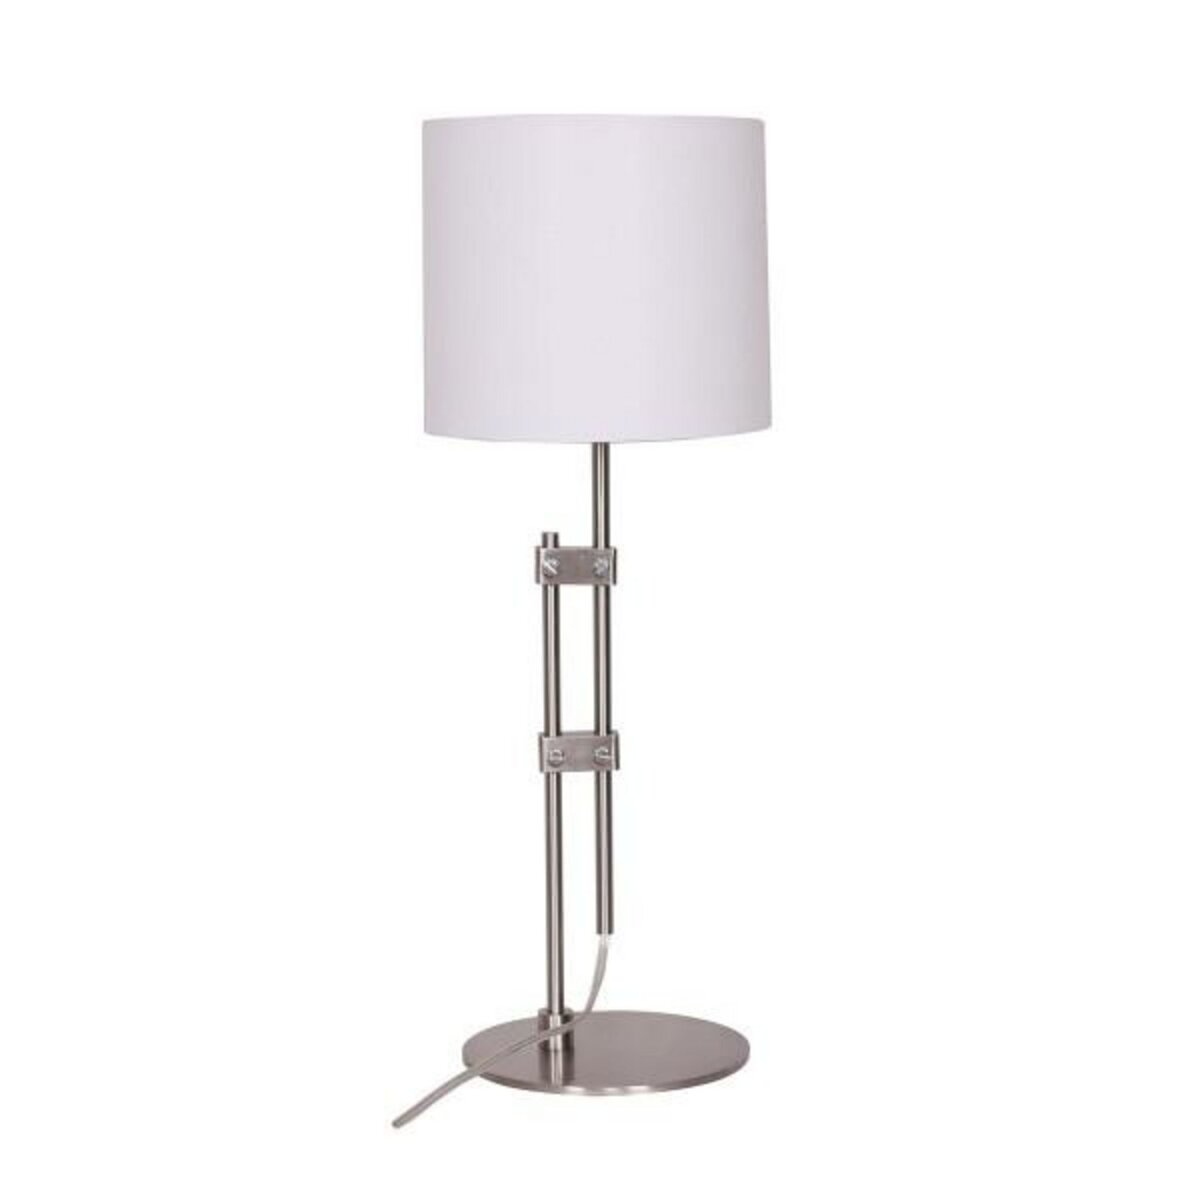 MARKET24 Lampe de bureau DKD Home Decor Argenté Métal Blanc Moderne (23 x 23 x 64 cm)